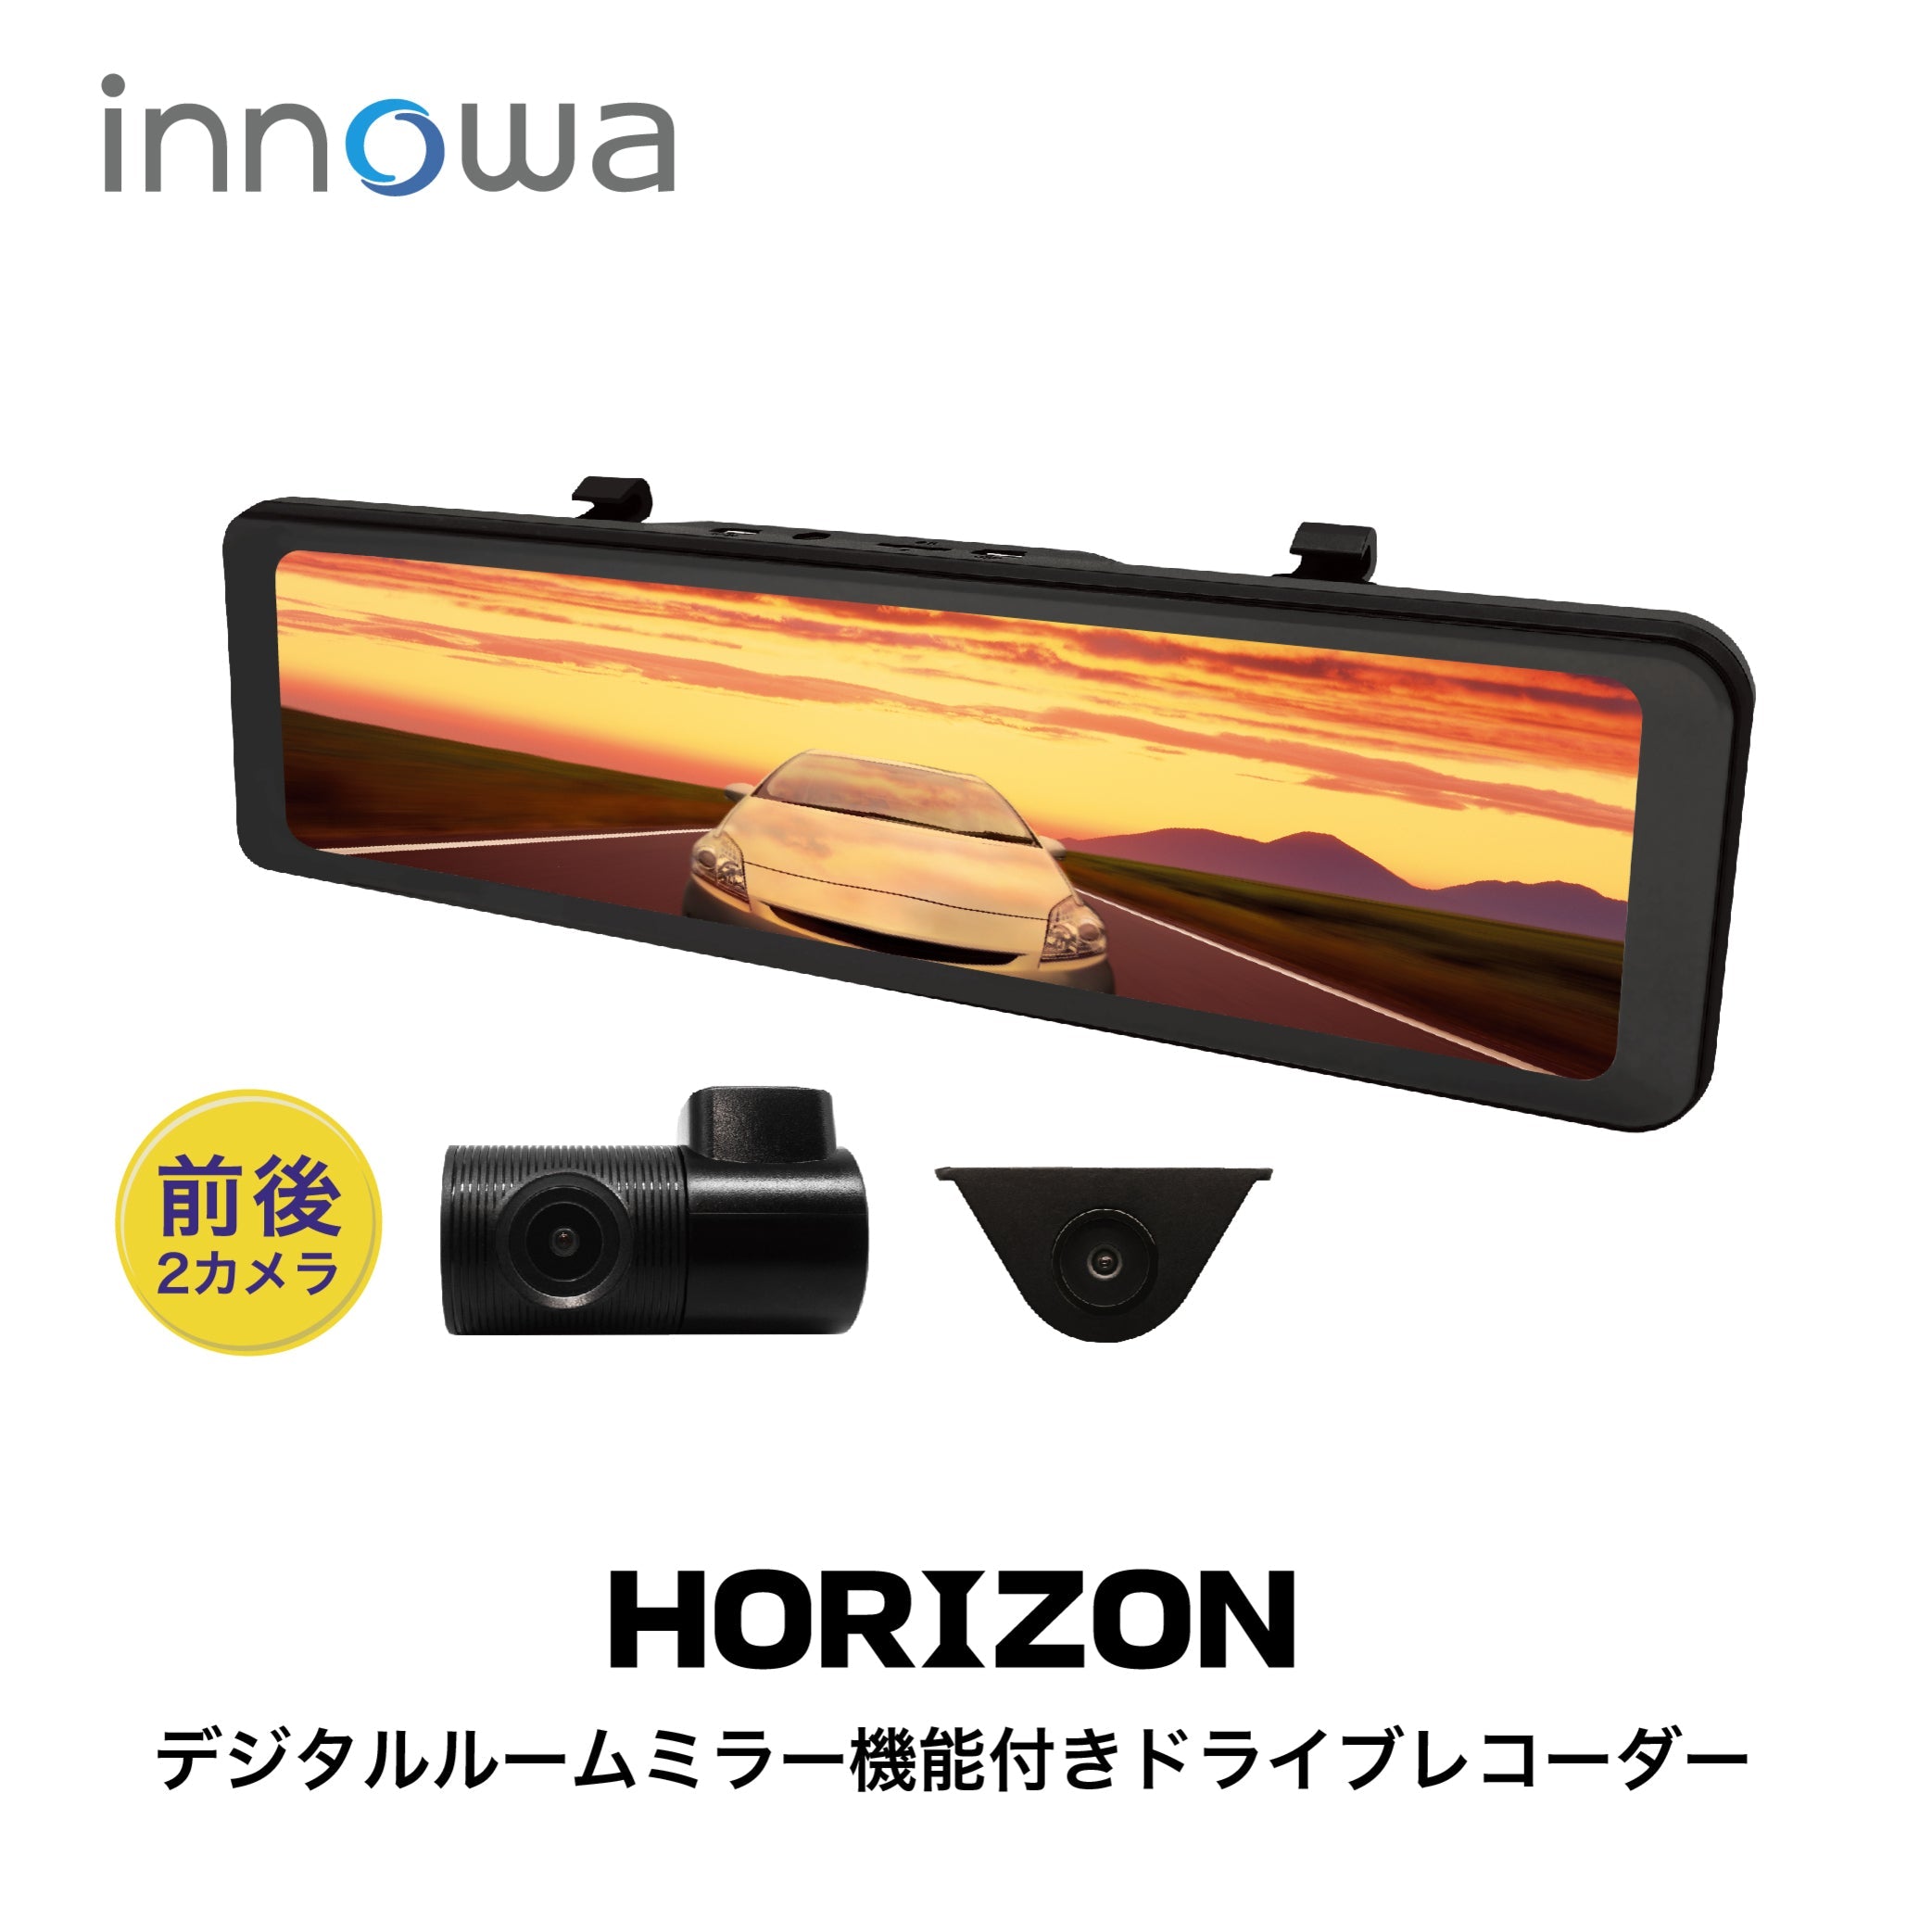 新商品!!】innowa HORIZON デジタルルームミラー機能付き ドライブ 